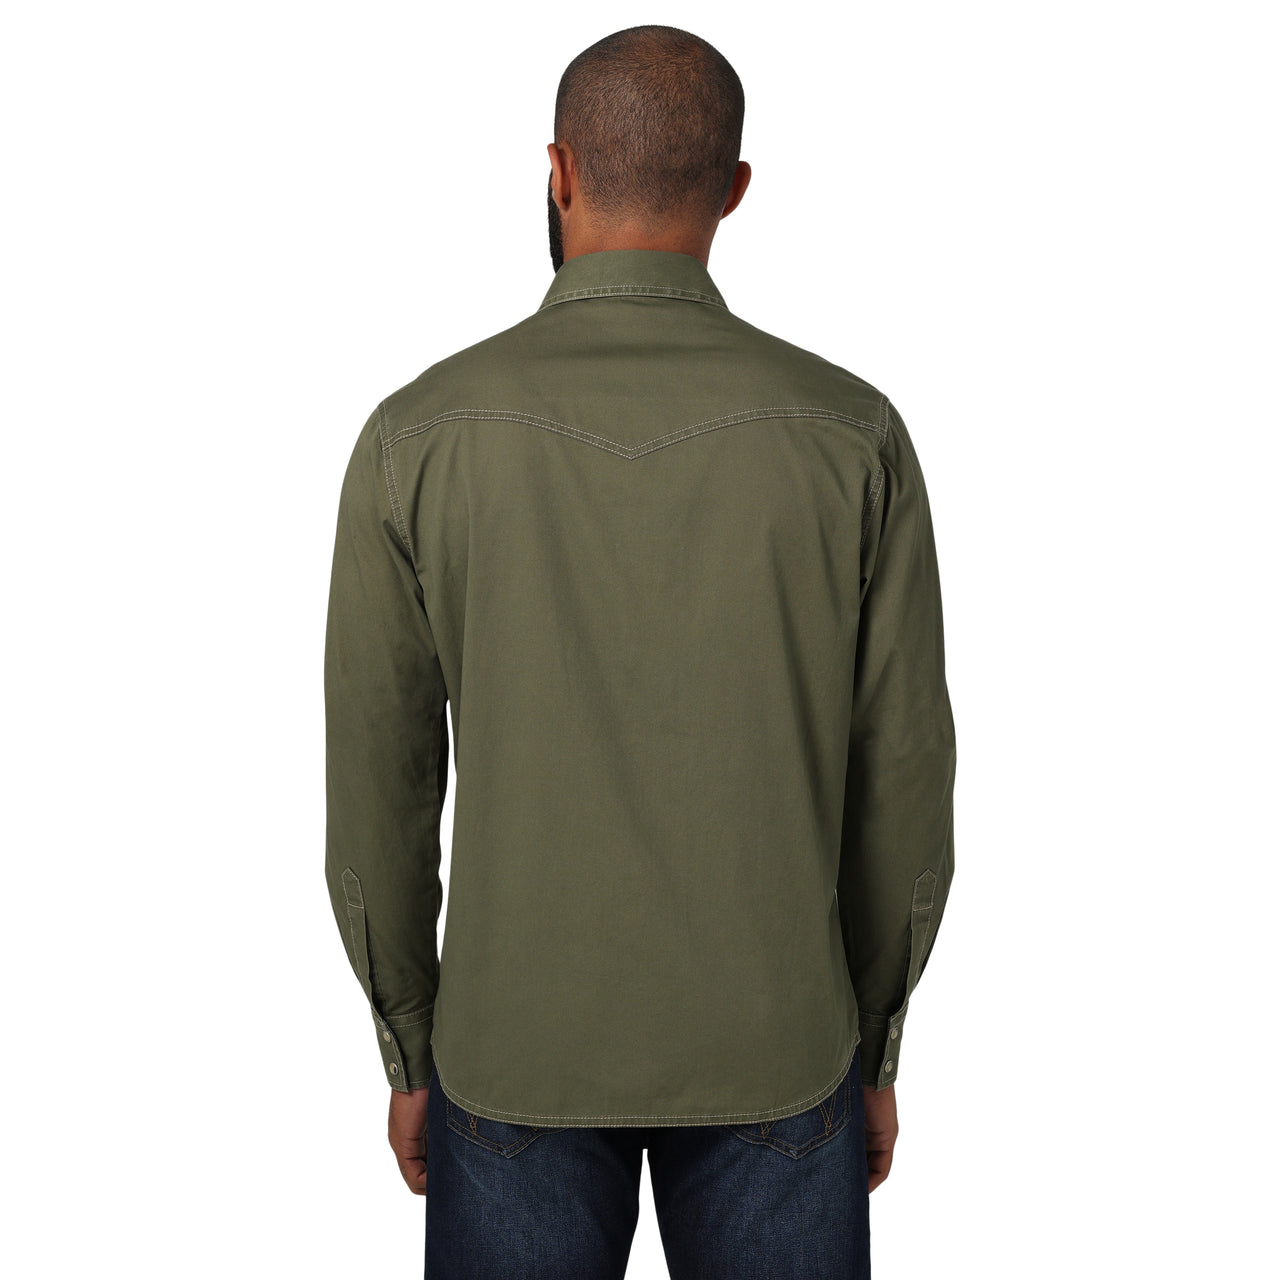 Wrangler Men's Retro Premium Long Sleeve Snap Shirt - Olive